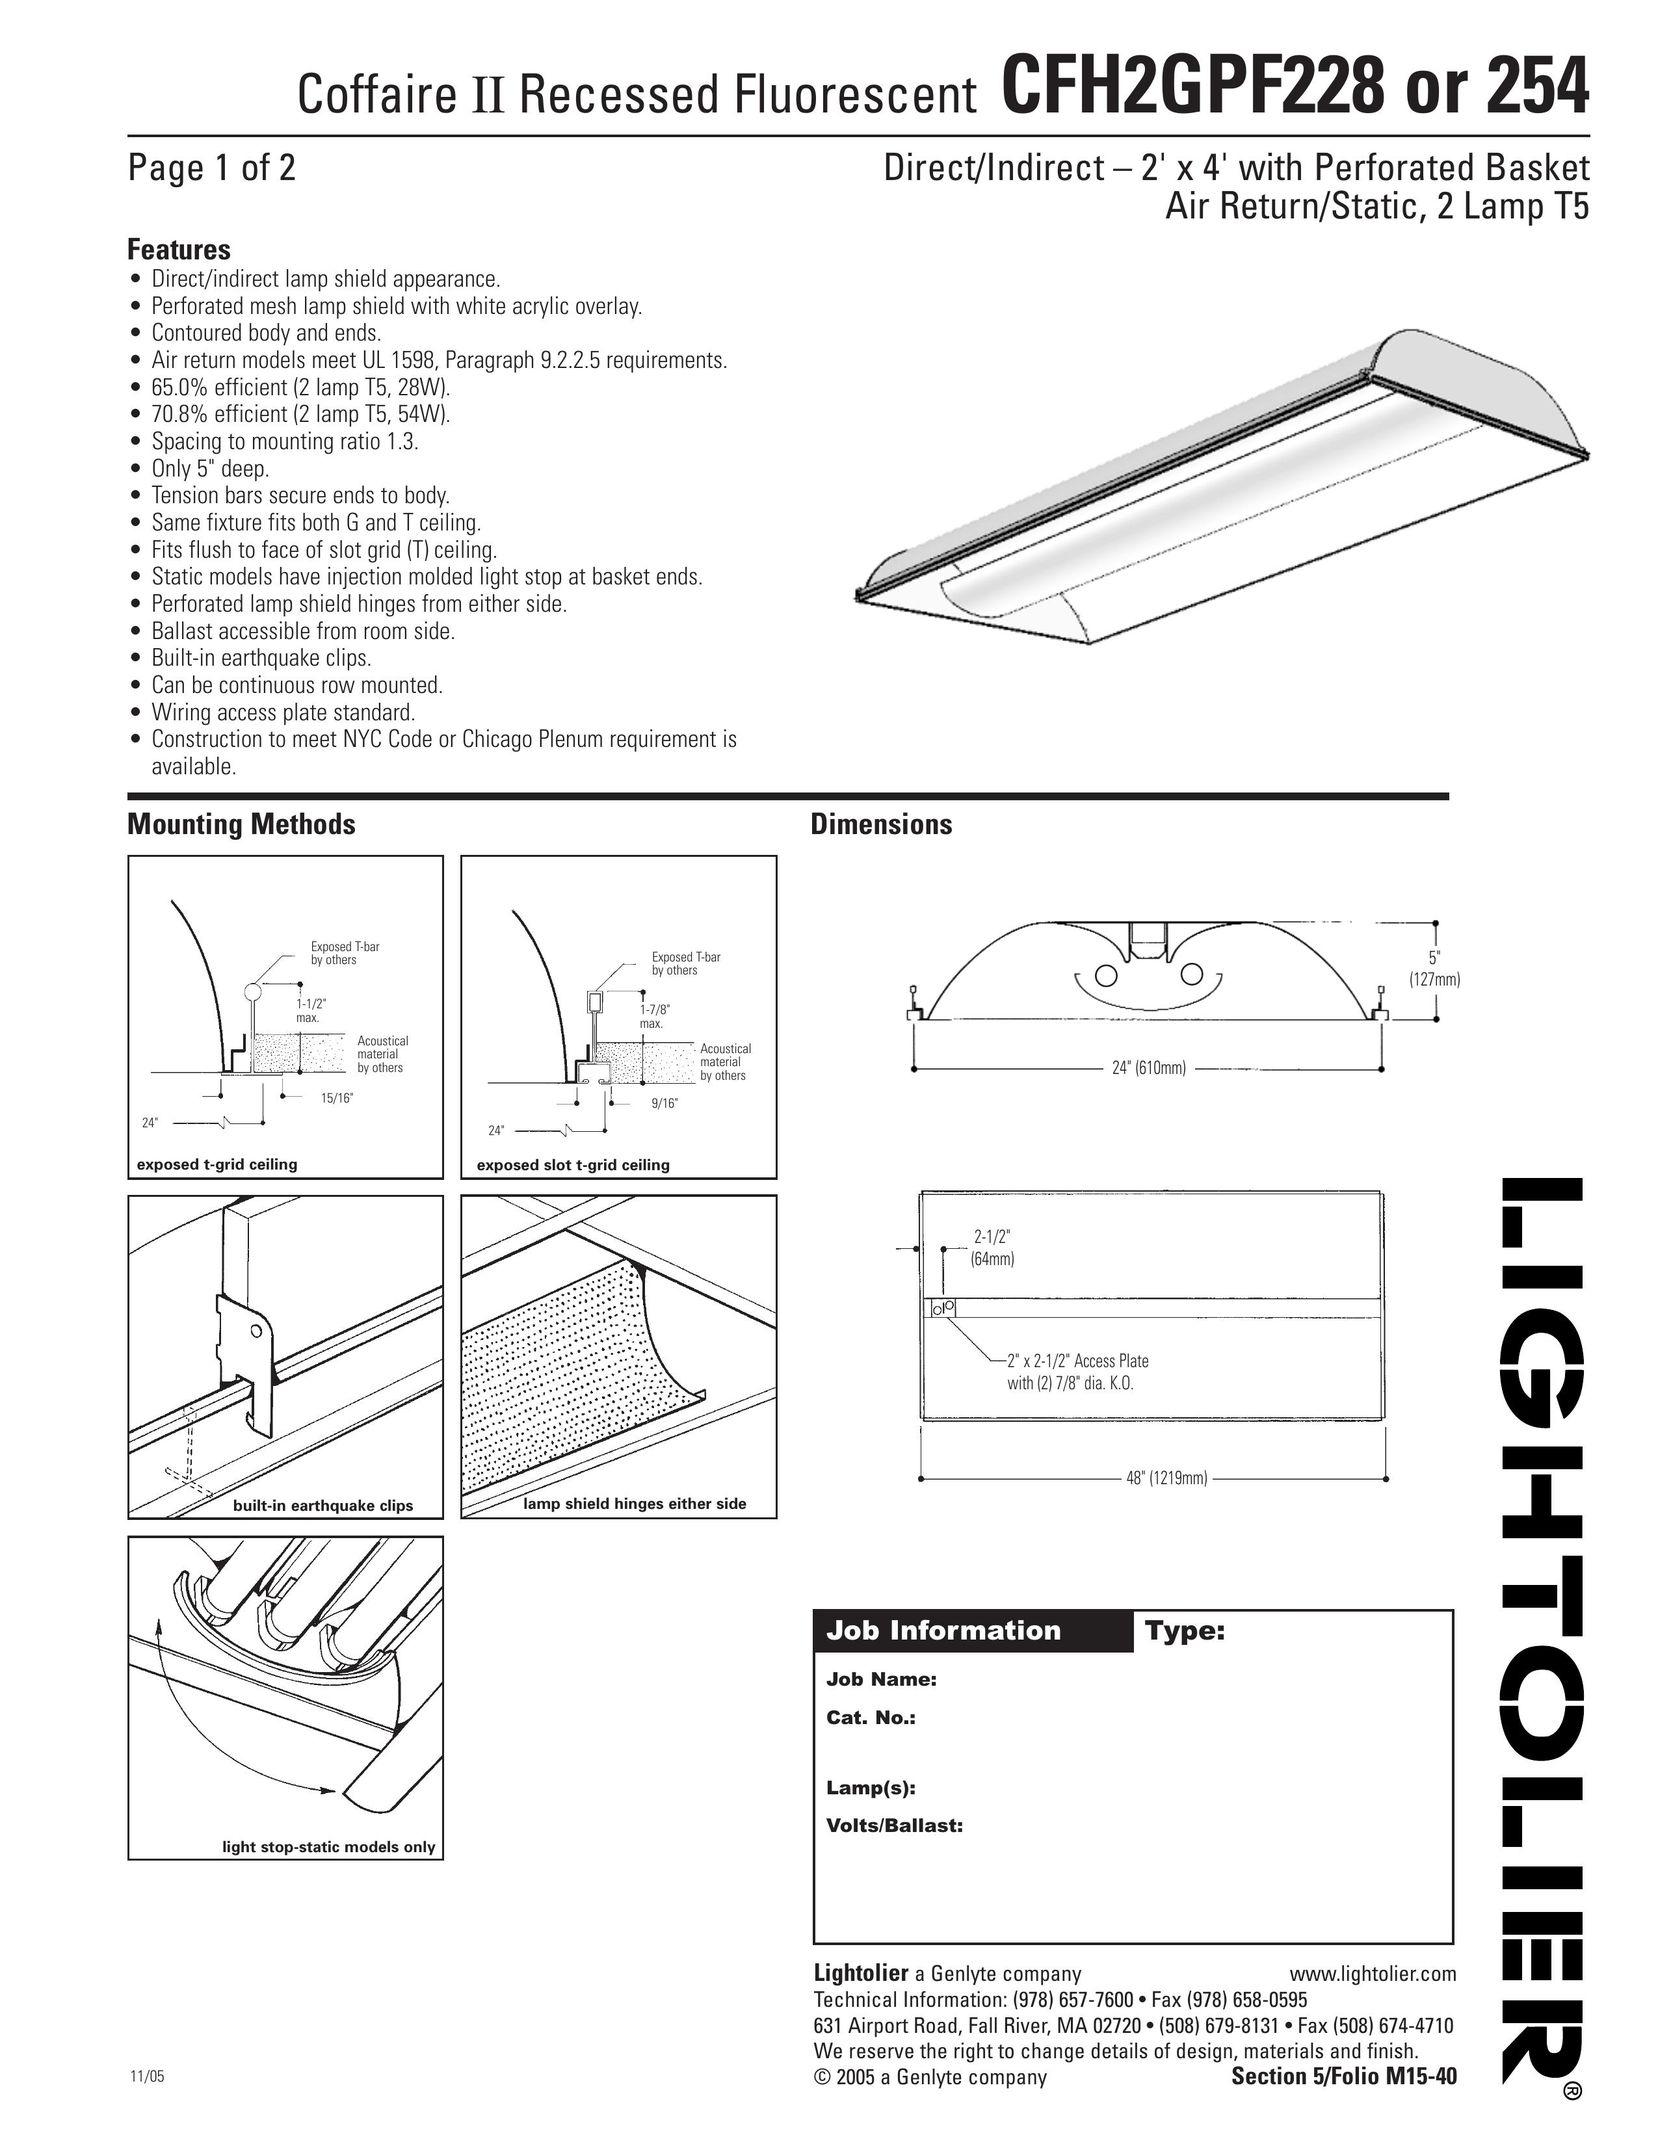 Lightolier CFH2GPF254 Work Light User Manual